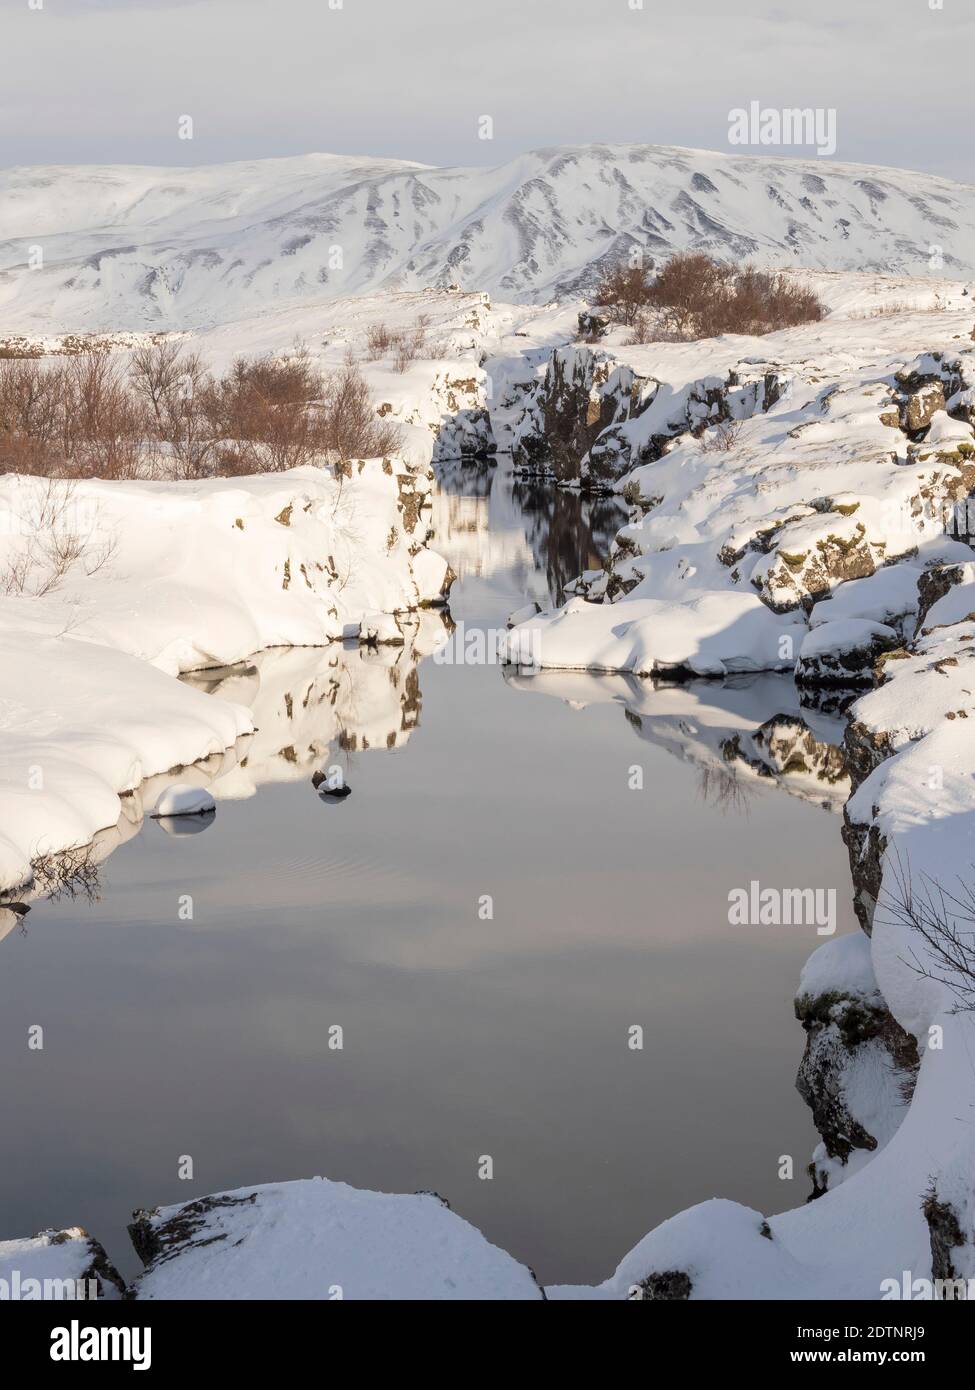 Gorge de Flosagja. Parc national de Thingvellir couvert de neige fraîche en Islande pendant l'hiver. Thingvellir fait partie du patrimoine mondial de l'UNESCO. Nord de l'UE Banque D'Images